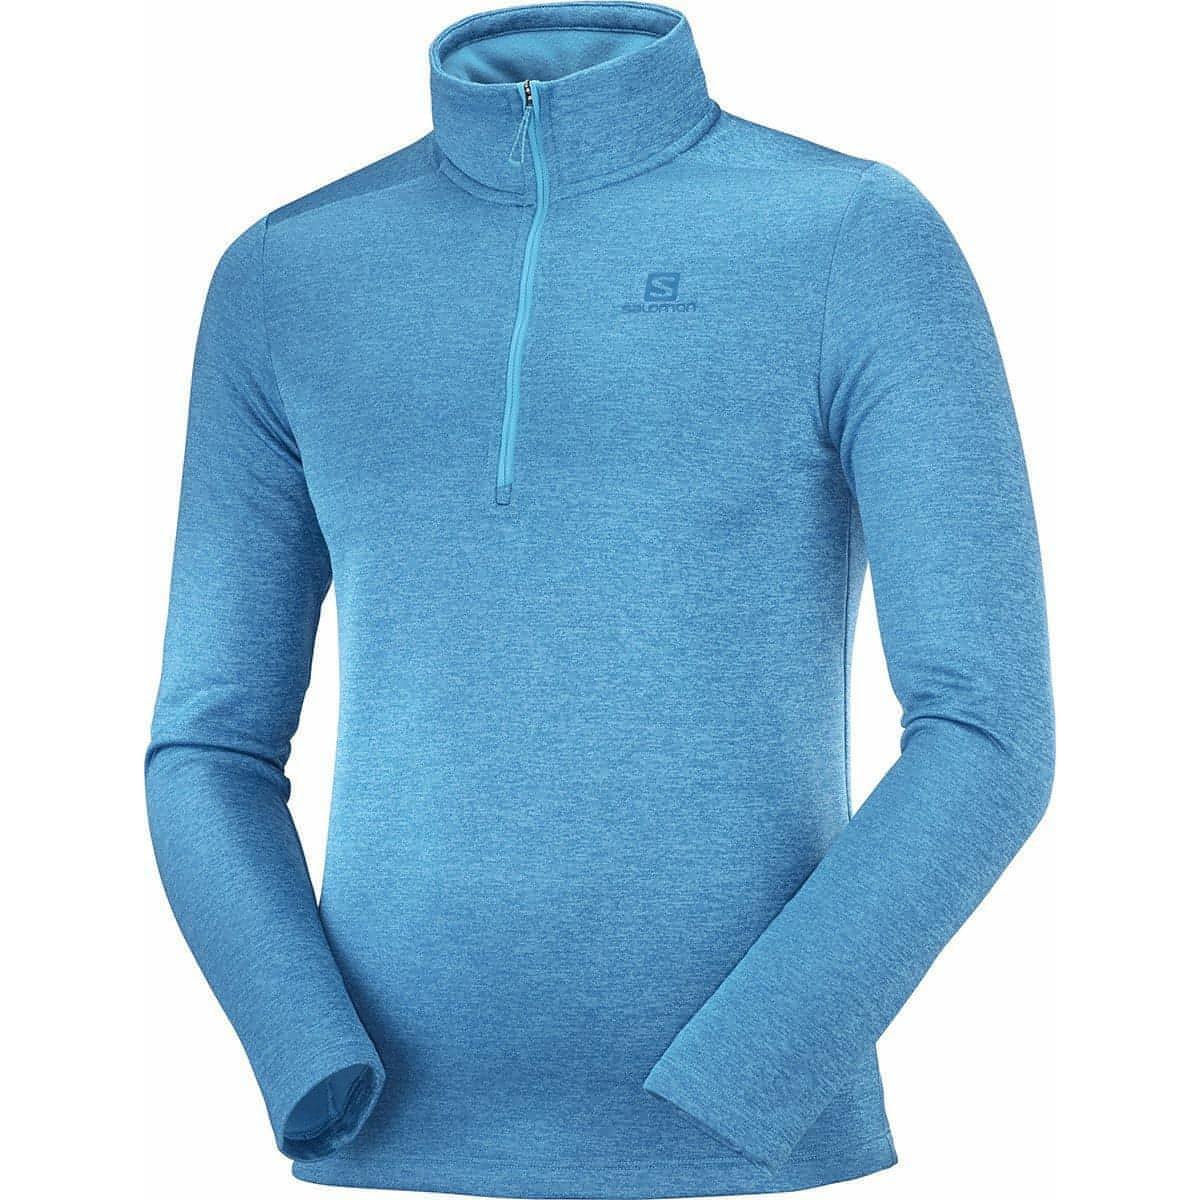 Salomon Transition Half Zip Mid Long Sleeve Mens Running Top - Blue - Start Fitness